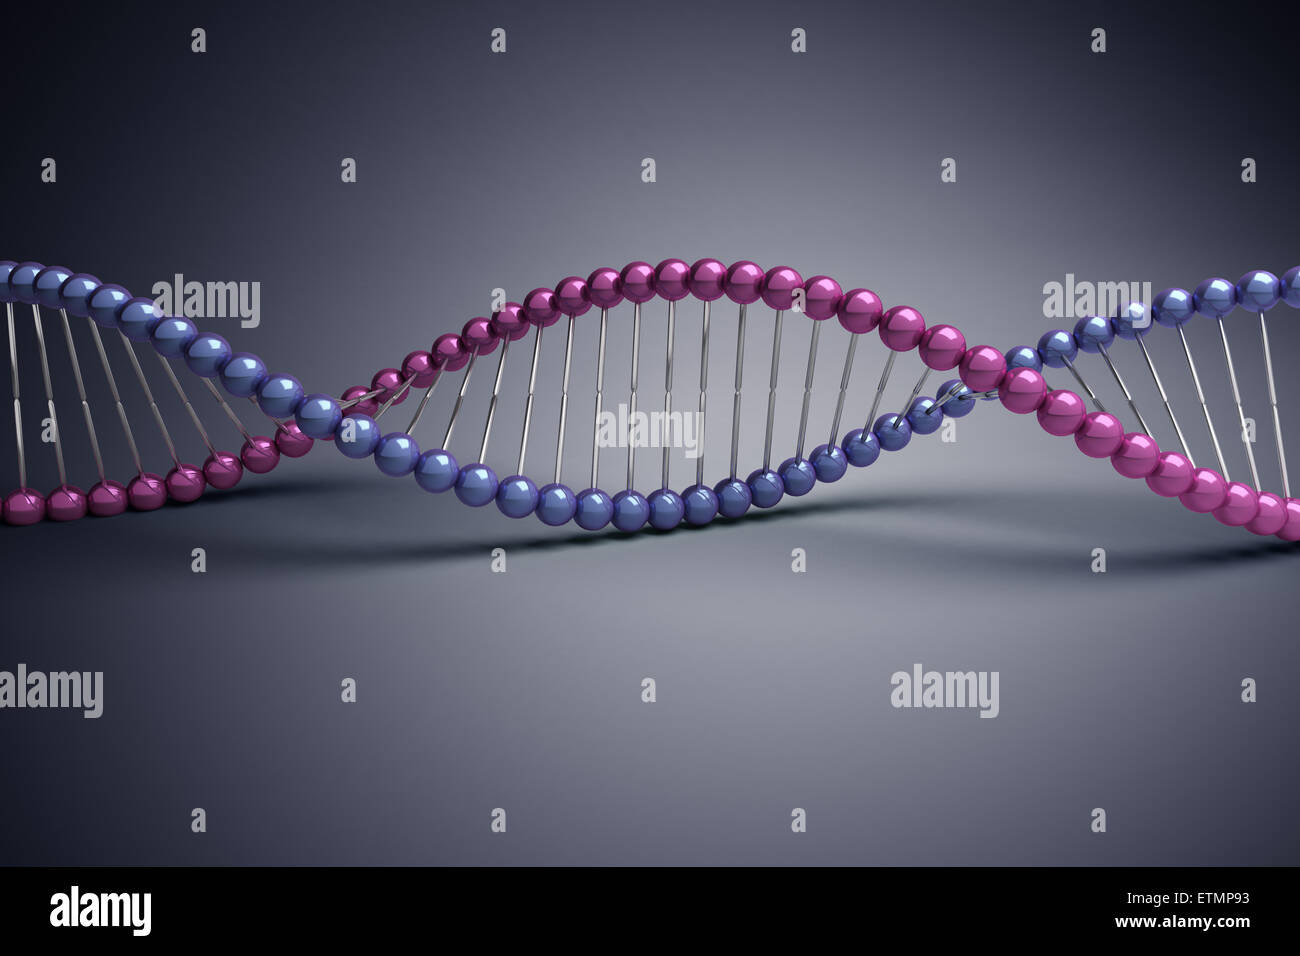 Ilustración estilizada de hebras de ADN humano, ácido desoxirribonucleico. Foto de stock